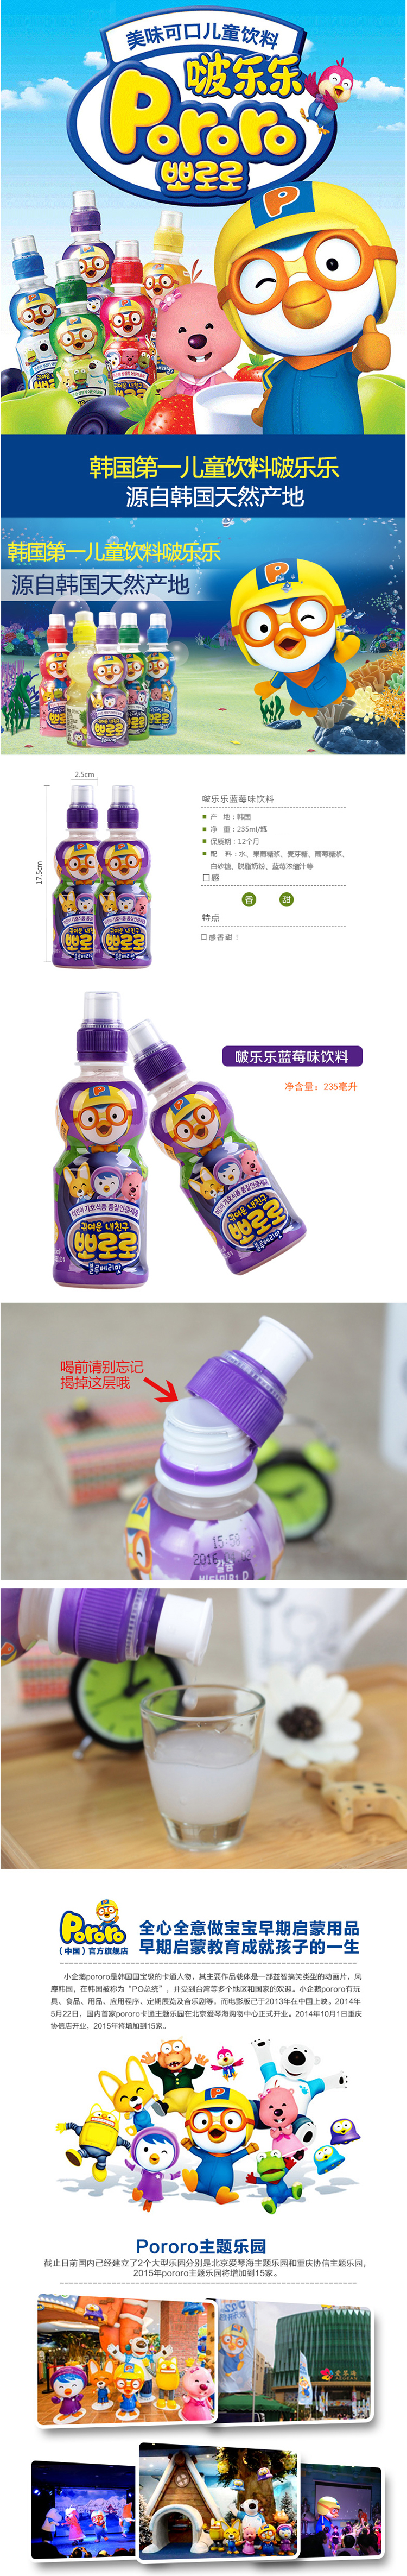 韩国进口饮料 啵乐乐乳酸菌蓝莓味 啵乐乐营养丰富 235ml